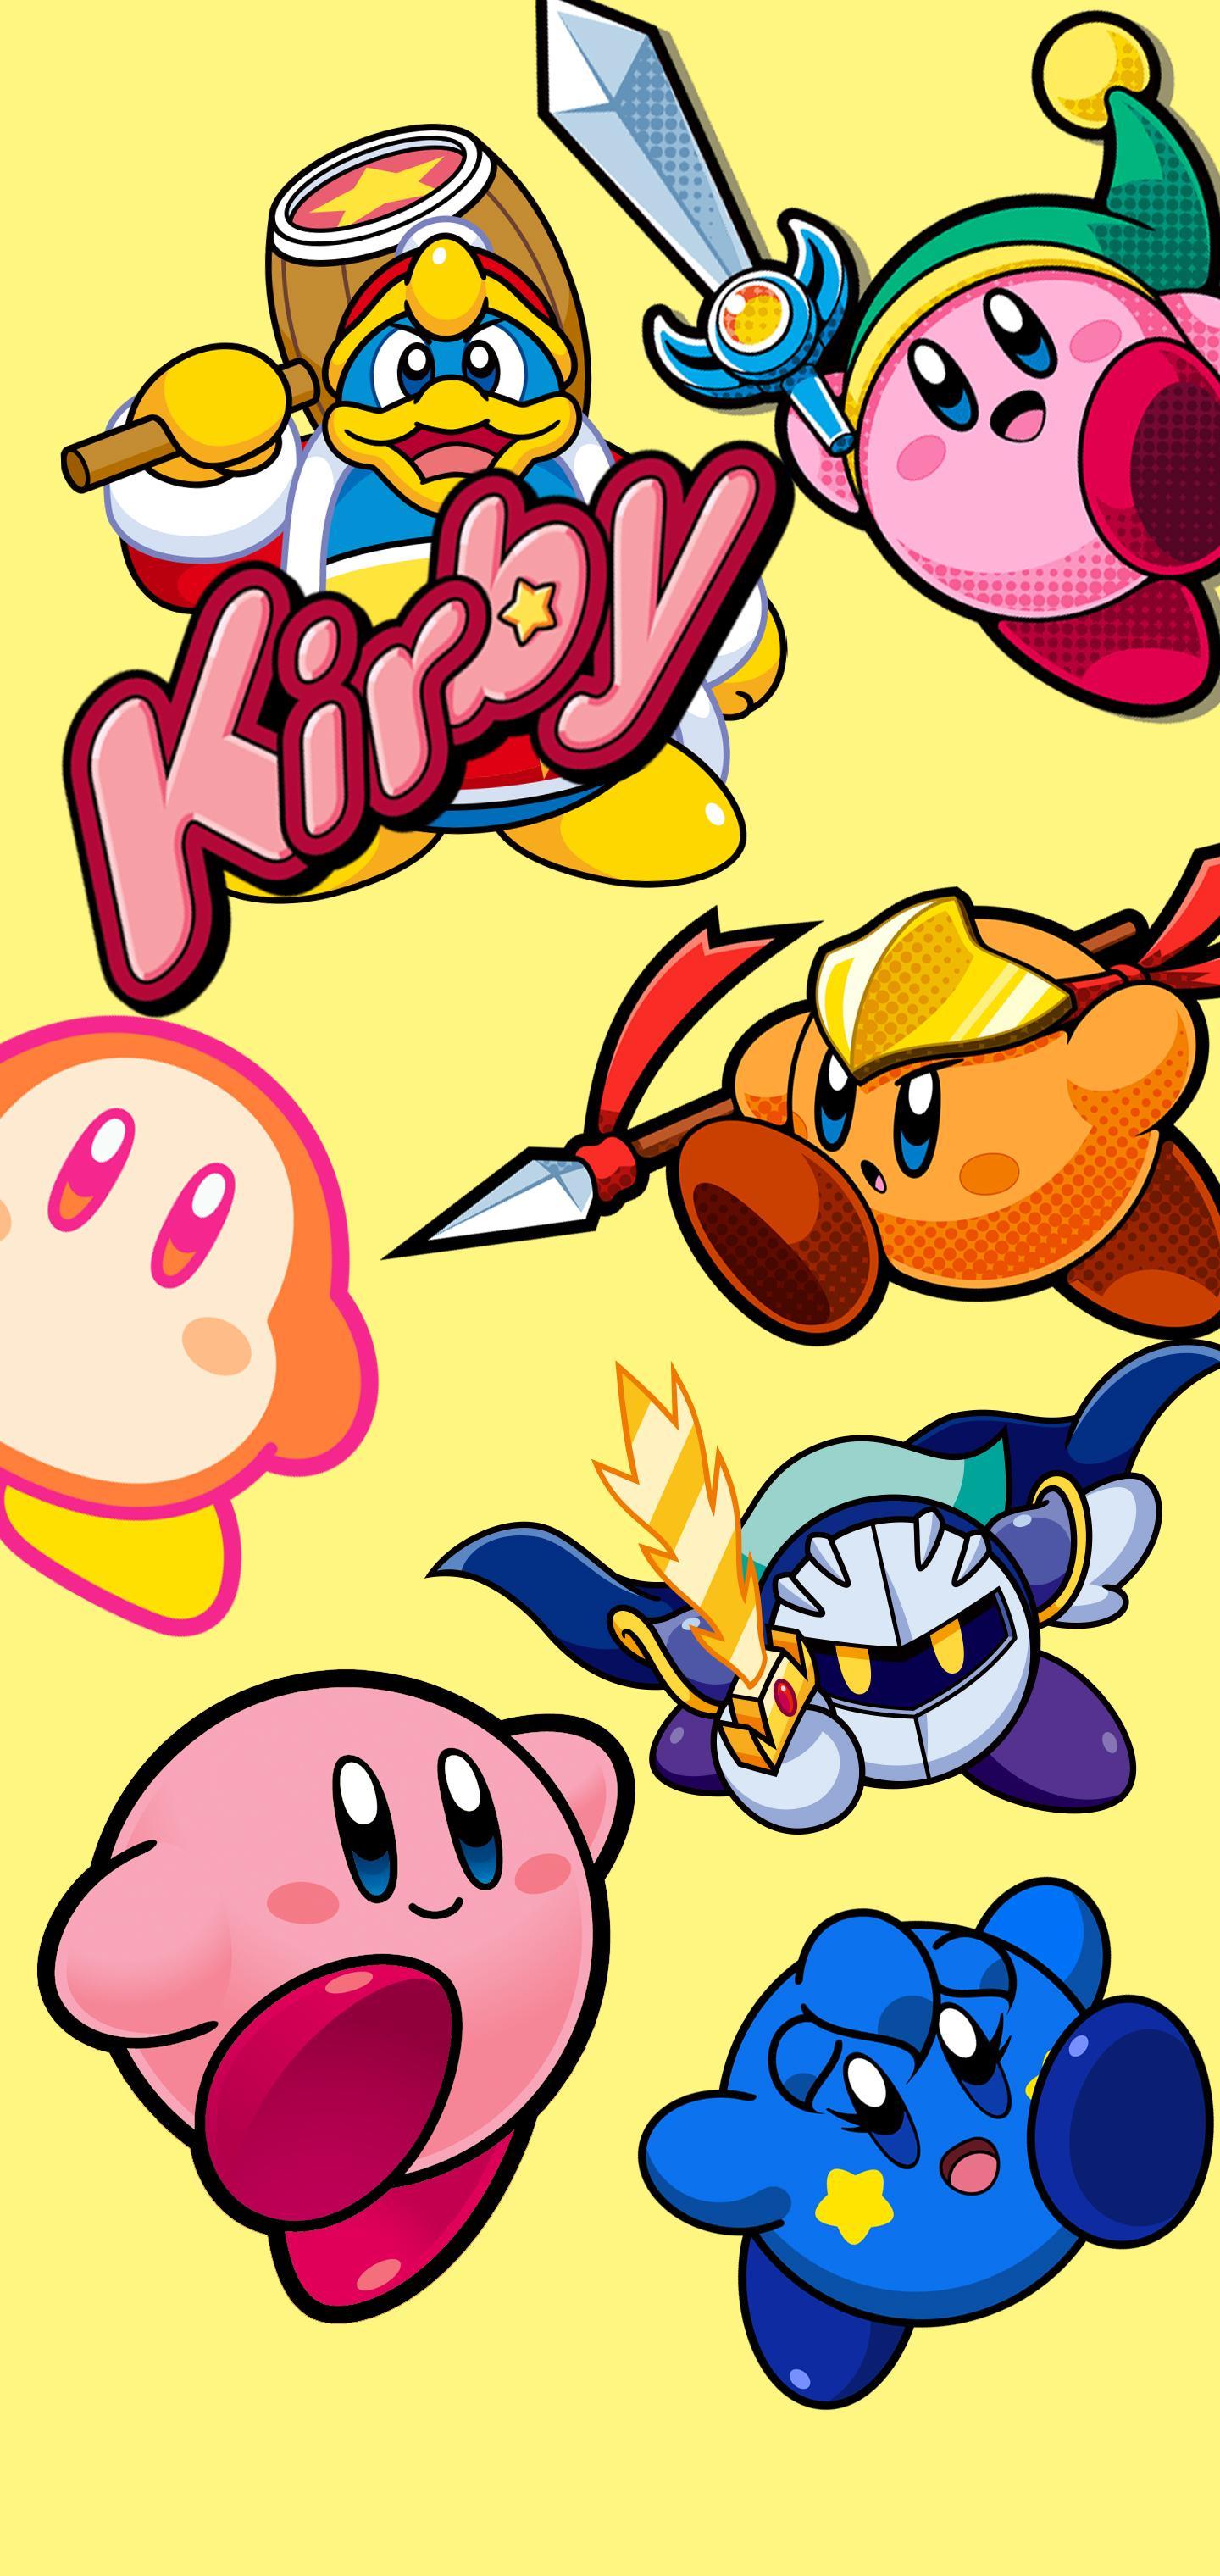 Hình nền Kirby 1440x3040 tôi đã làm, tôi nghĩ vậy